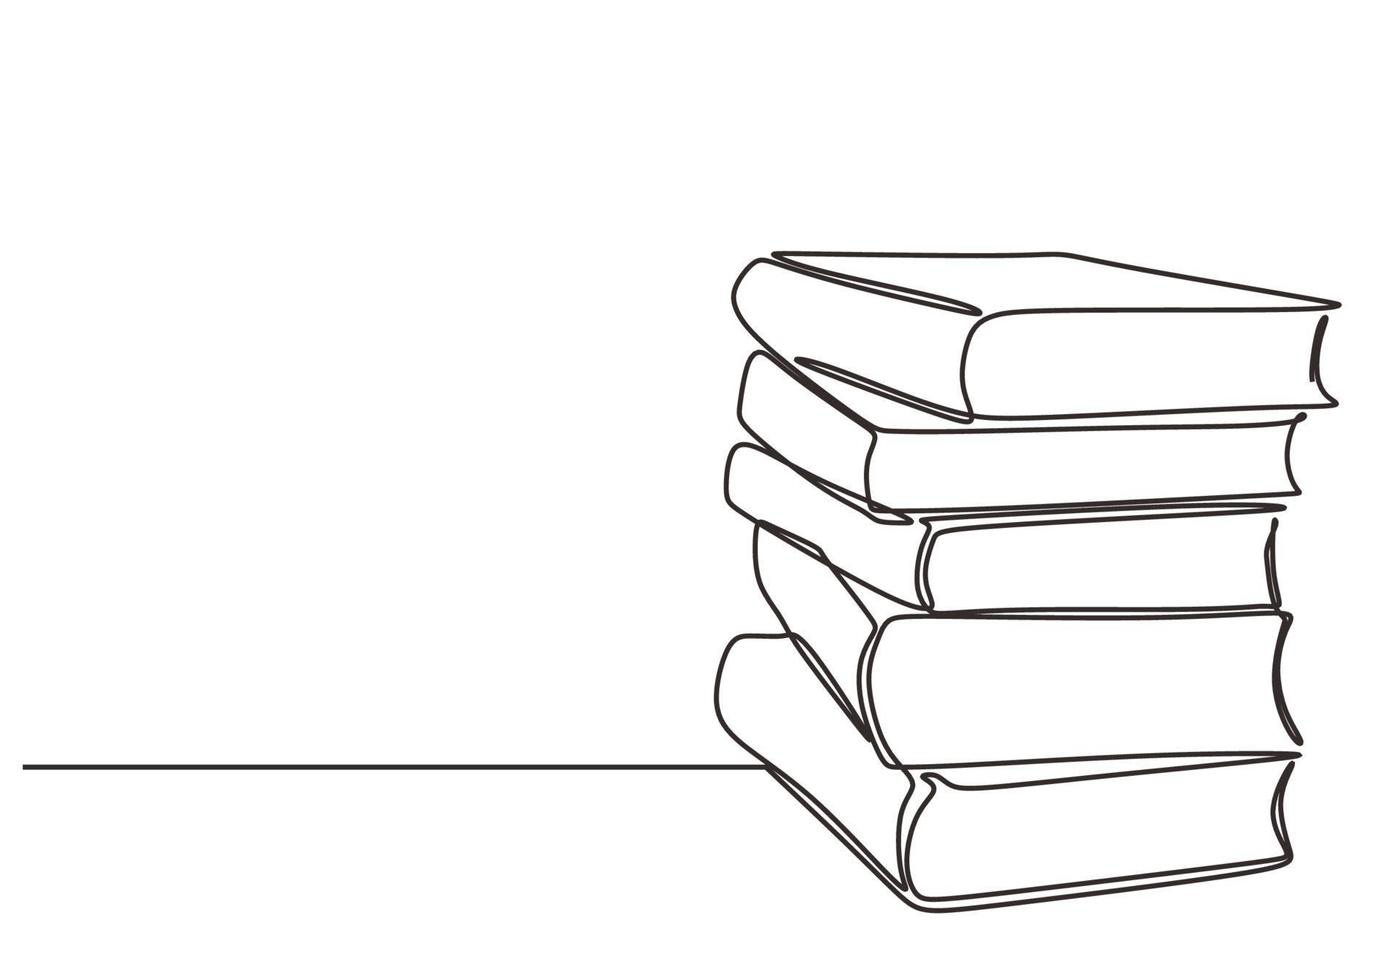 pila de libro dibujo lineal continuo dibujado a mano minimalista vector